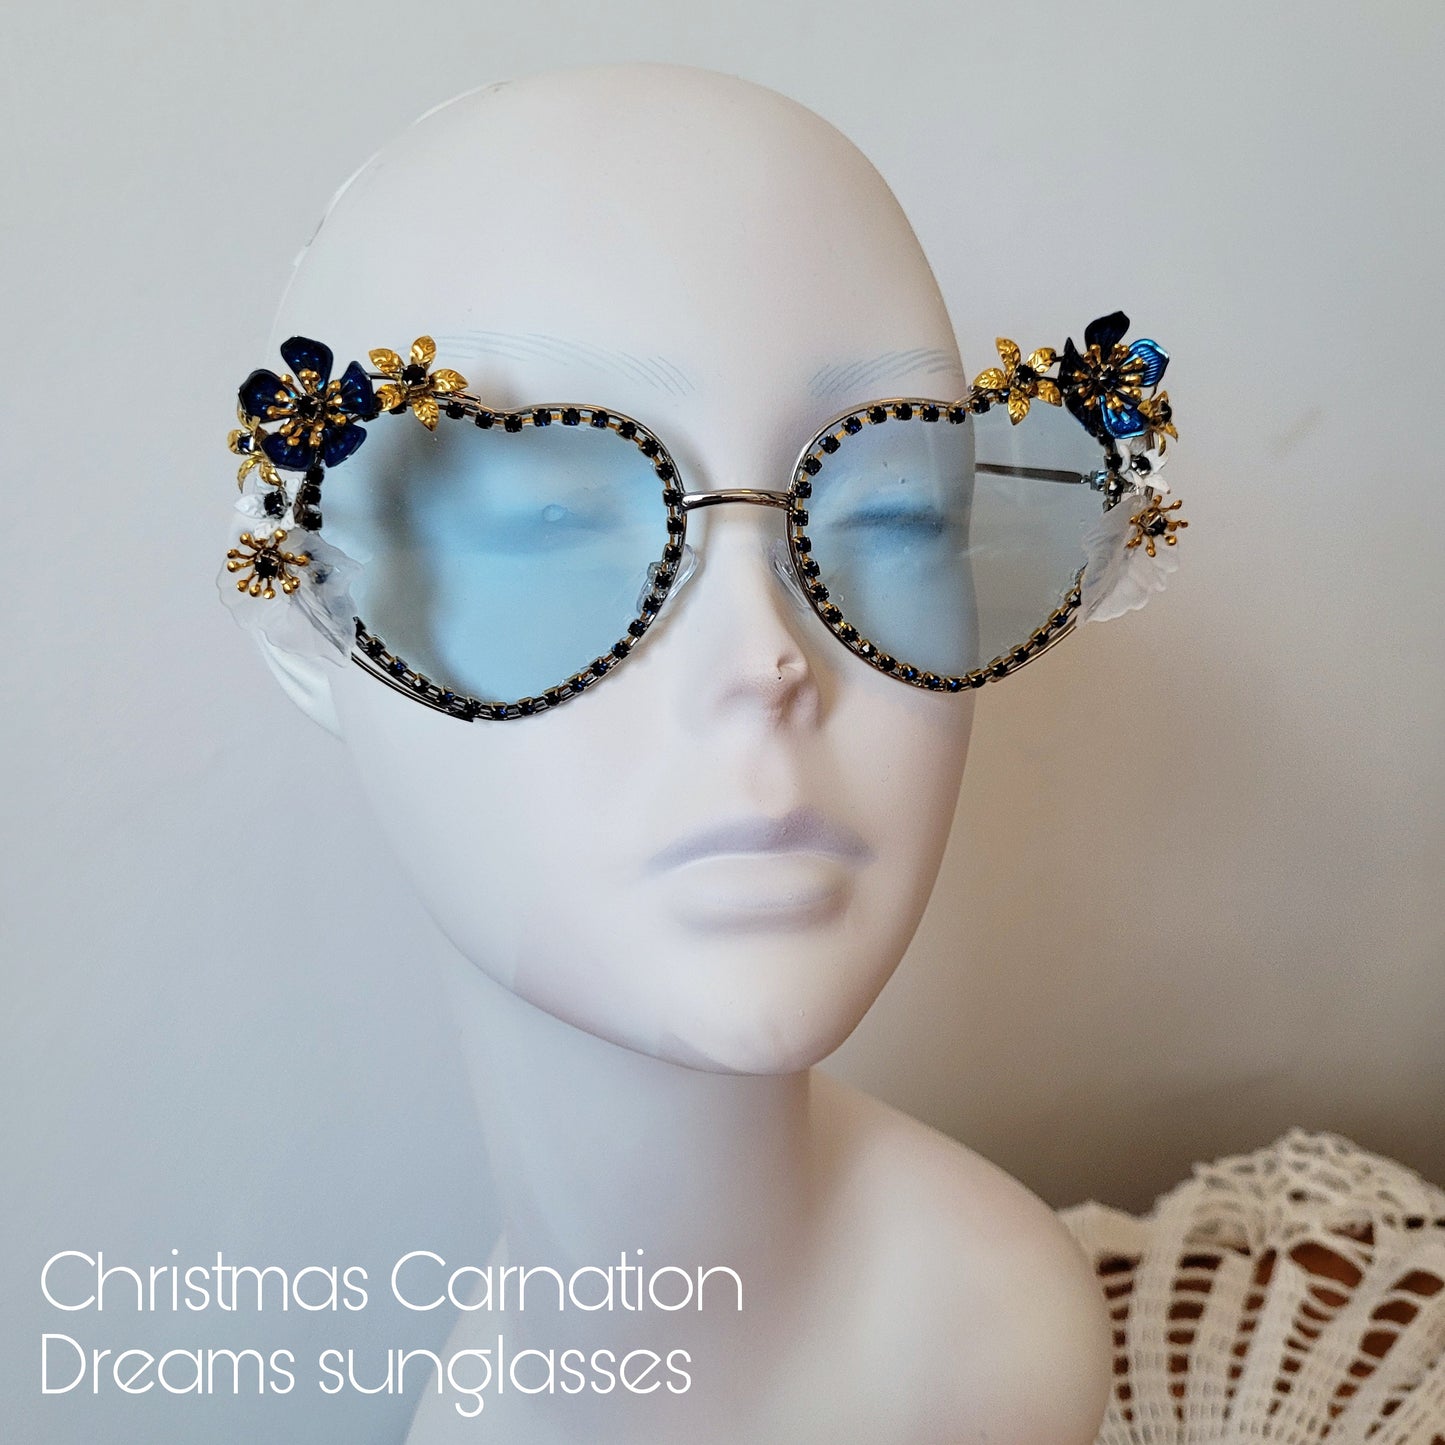 Bumblebee Dreams collection: the Christmas Carnation Dreams Sunglasses (Göteborg 400 år edition)